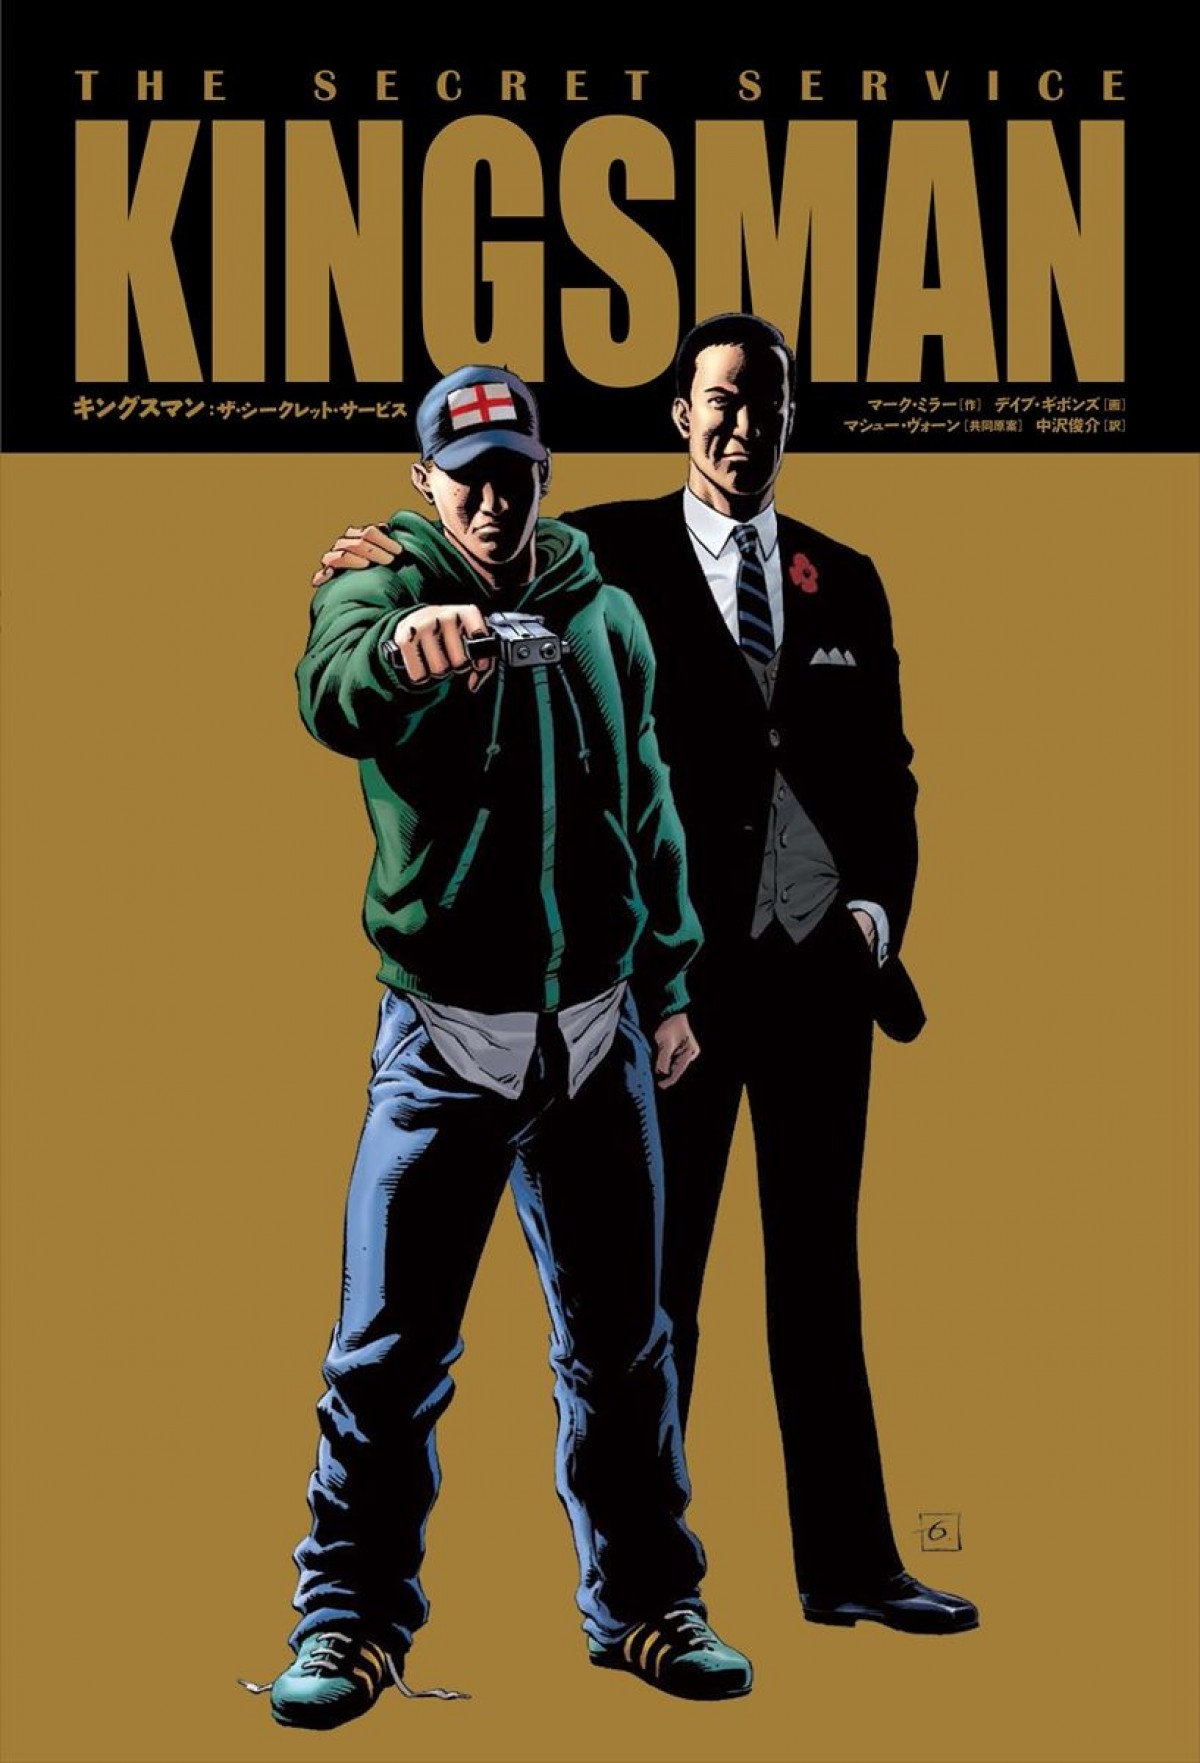 キングスマン 原作コミック発売 Sw マーク ハミル出演の秘密が判明 2015年7月30日 映画 ニュース クランクイン